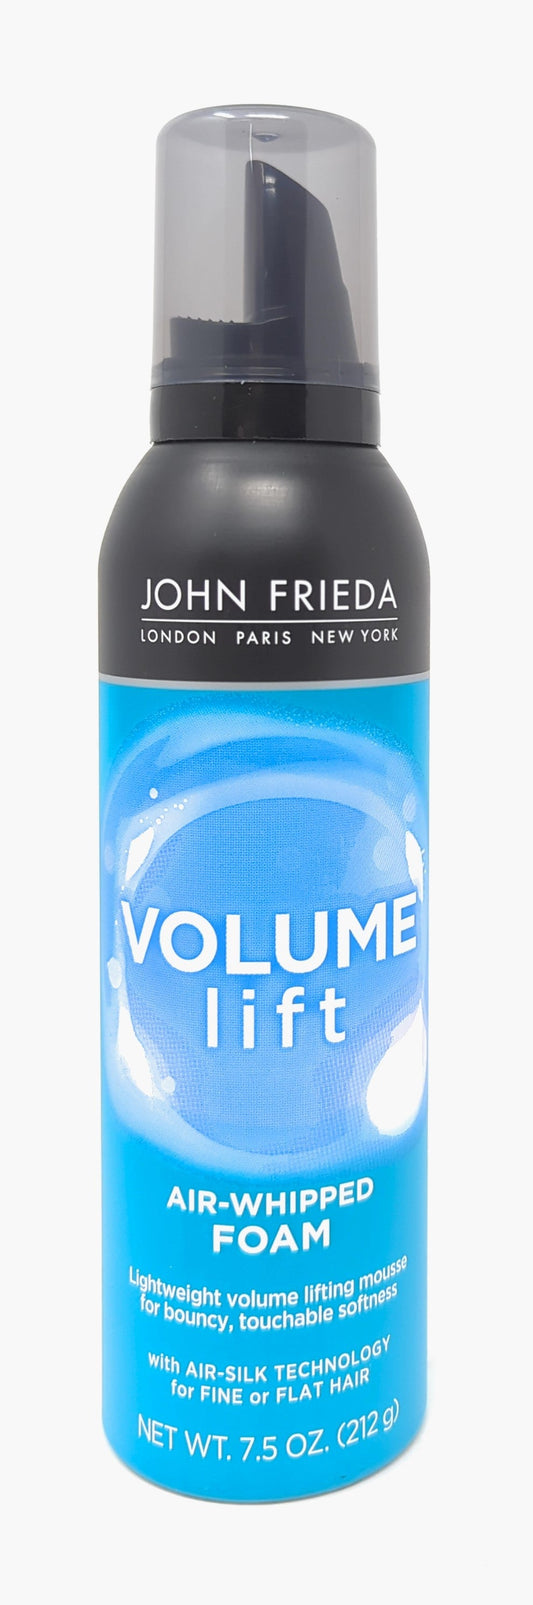 JOHN FRIEDA VOLUME LIFT AIR WHIPPED FOAM 7.5OZ